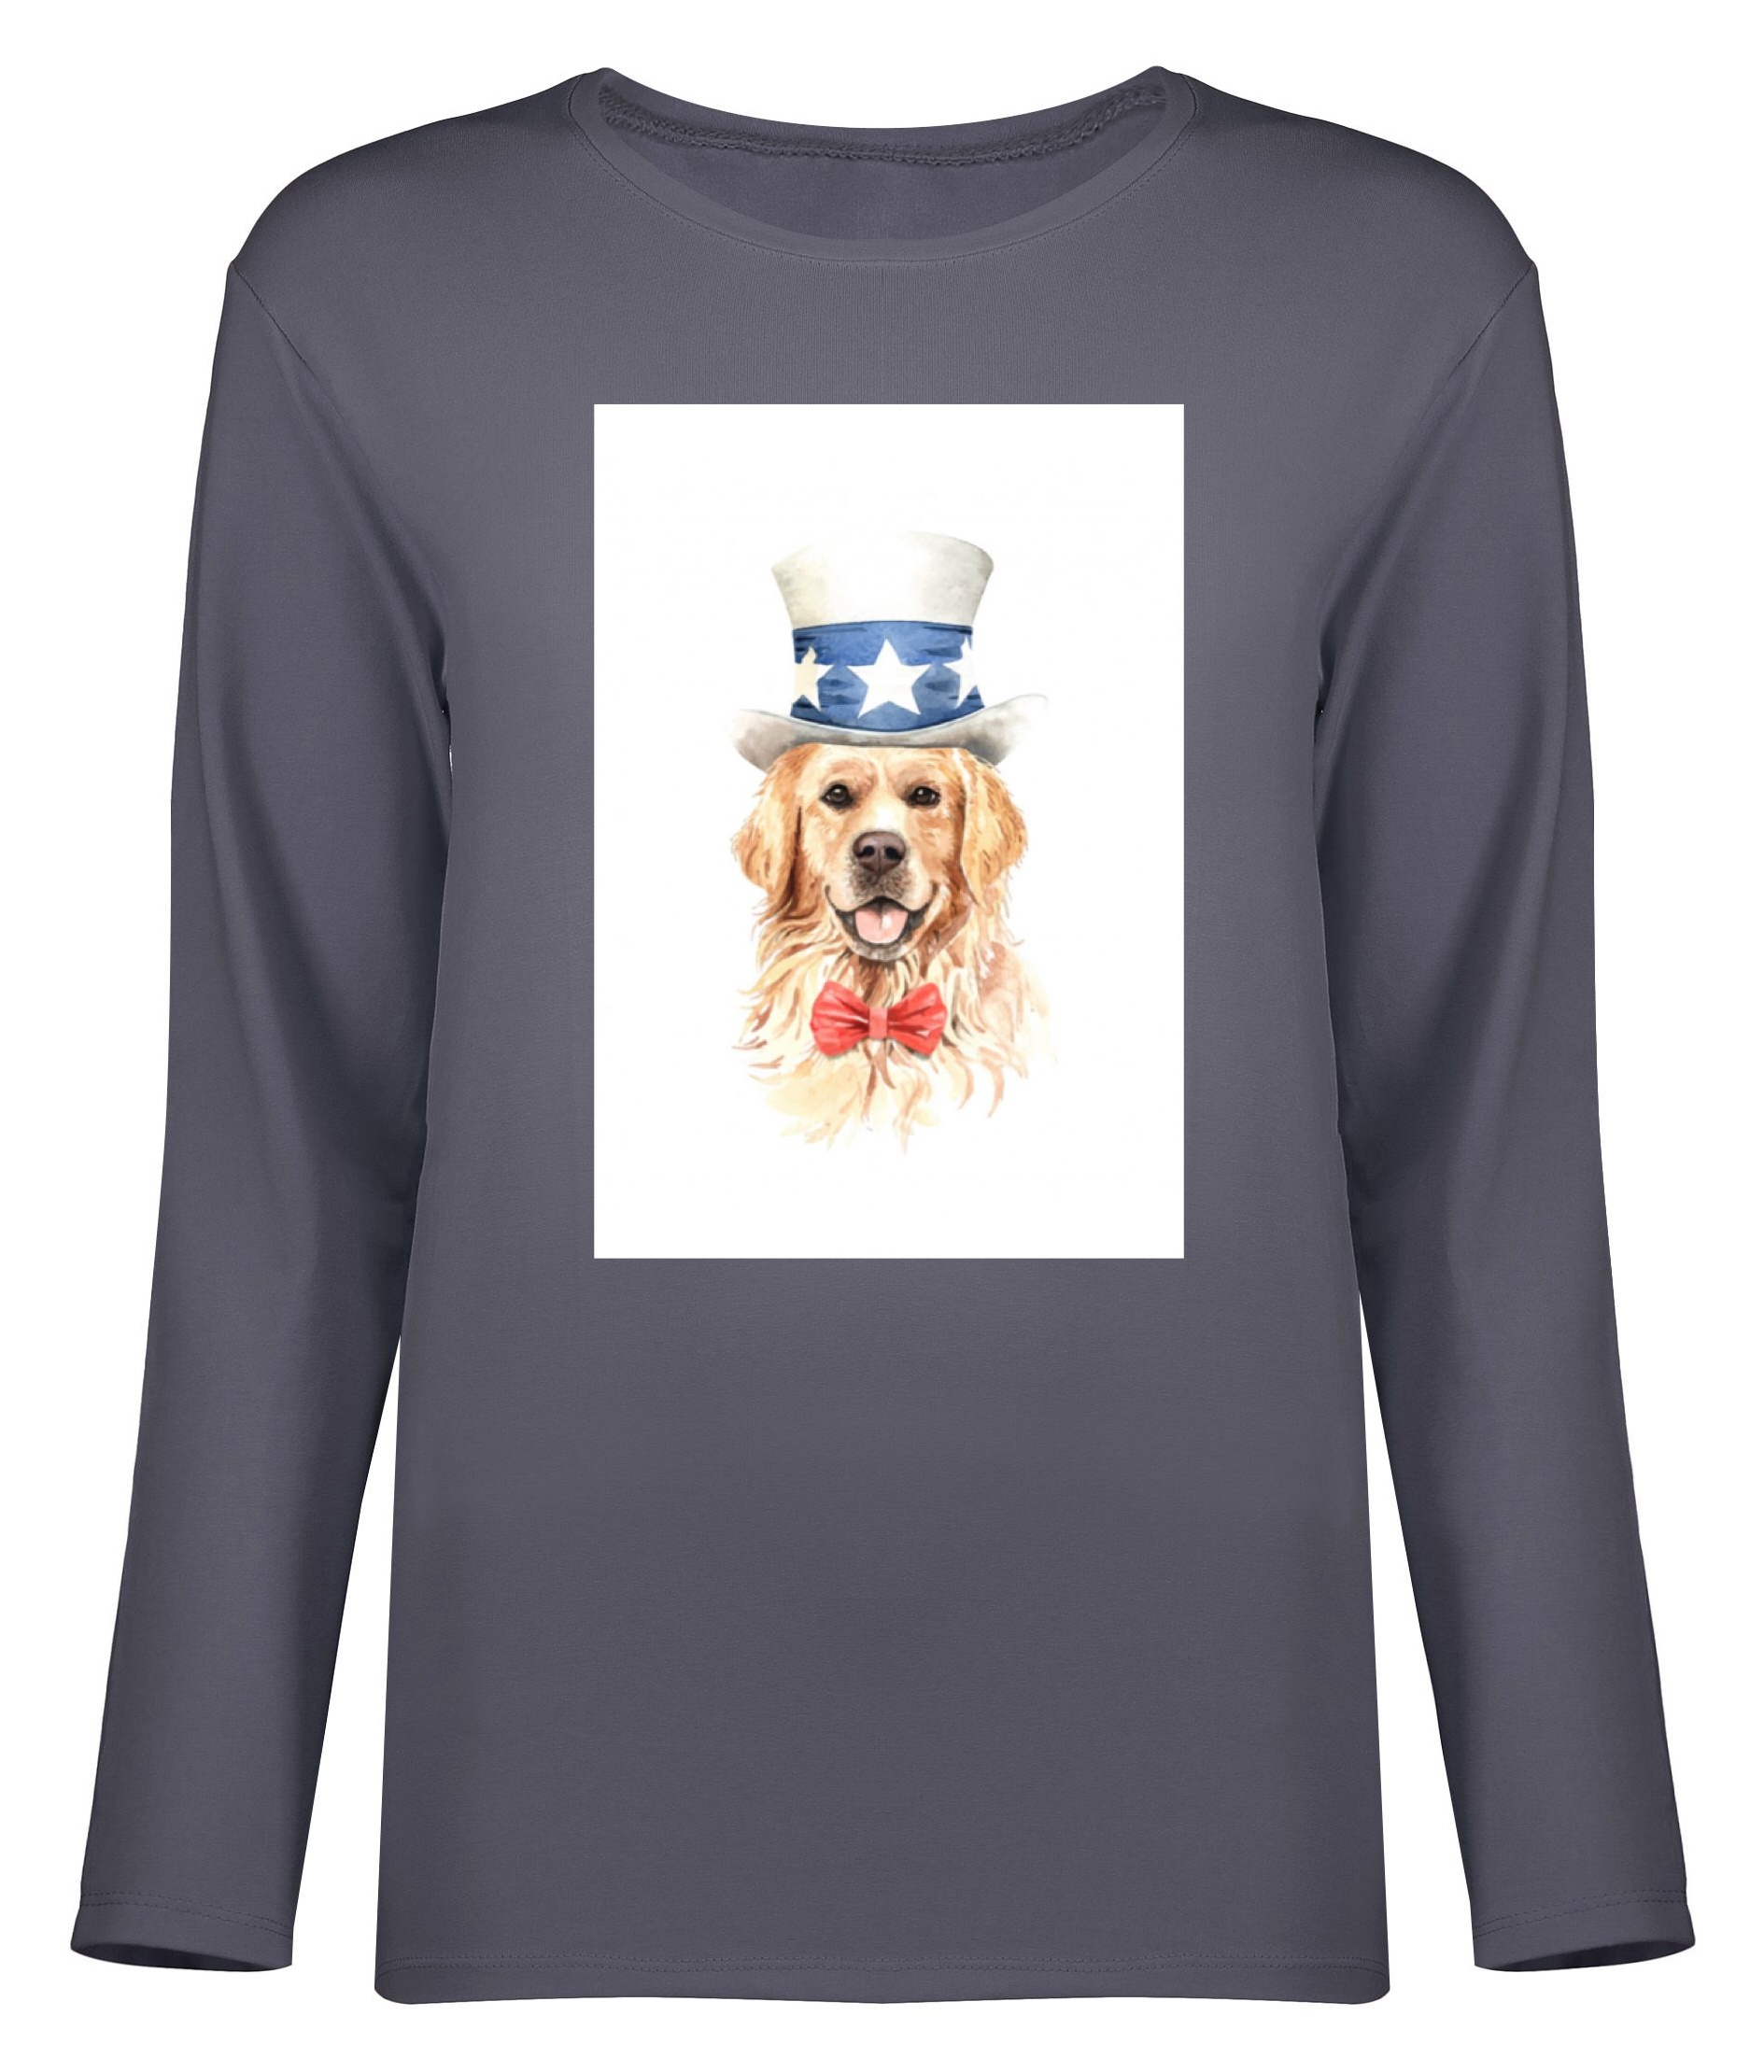 تی شرت آستین بلند زنانه طرح سگ کد 8722